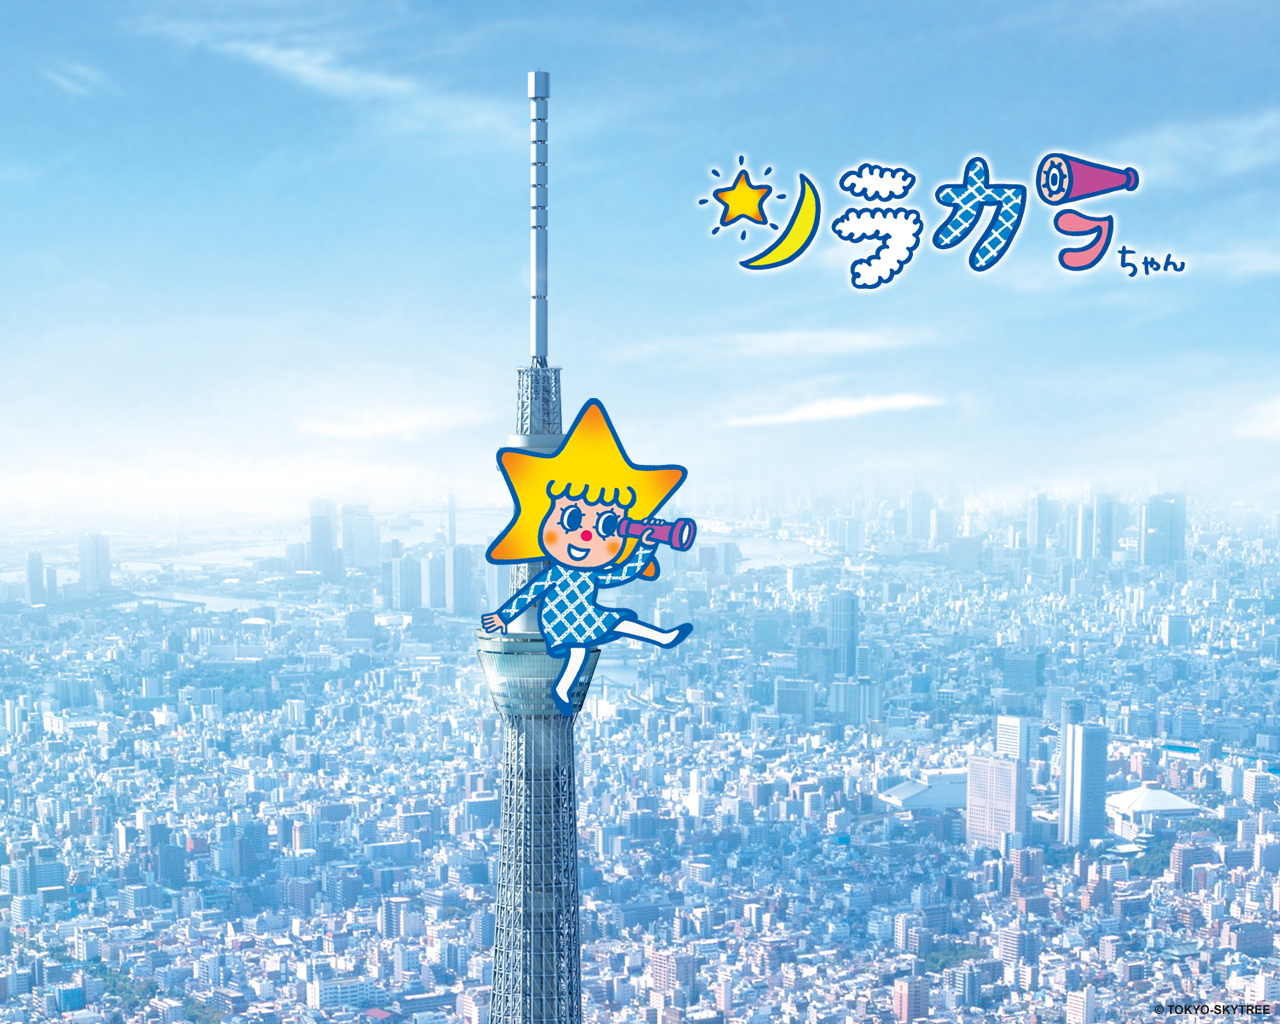 プレゼント ソラカラちゃん情報 東京スカイツリーについて 東京スカイツリー Tokyo Skytree